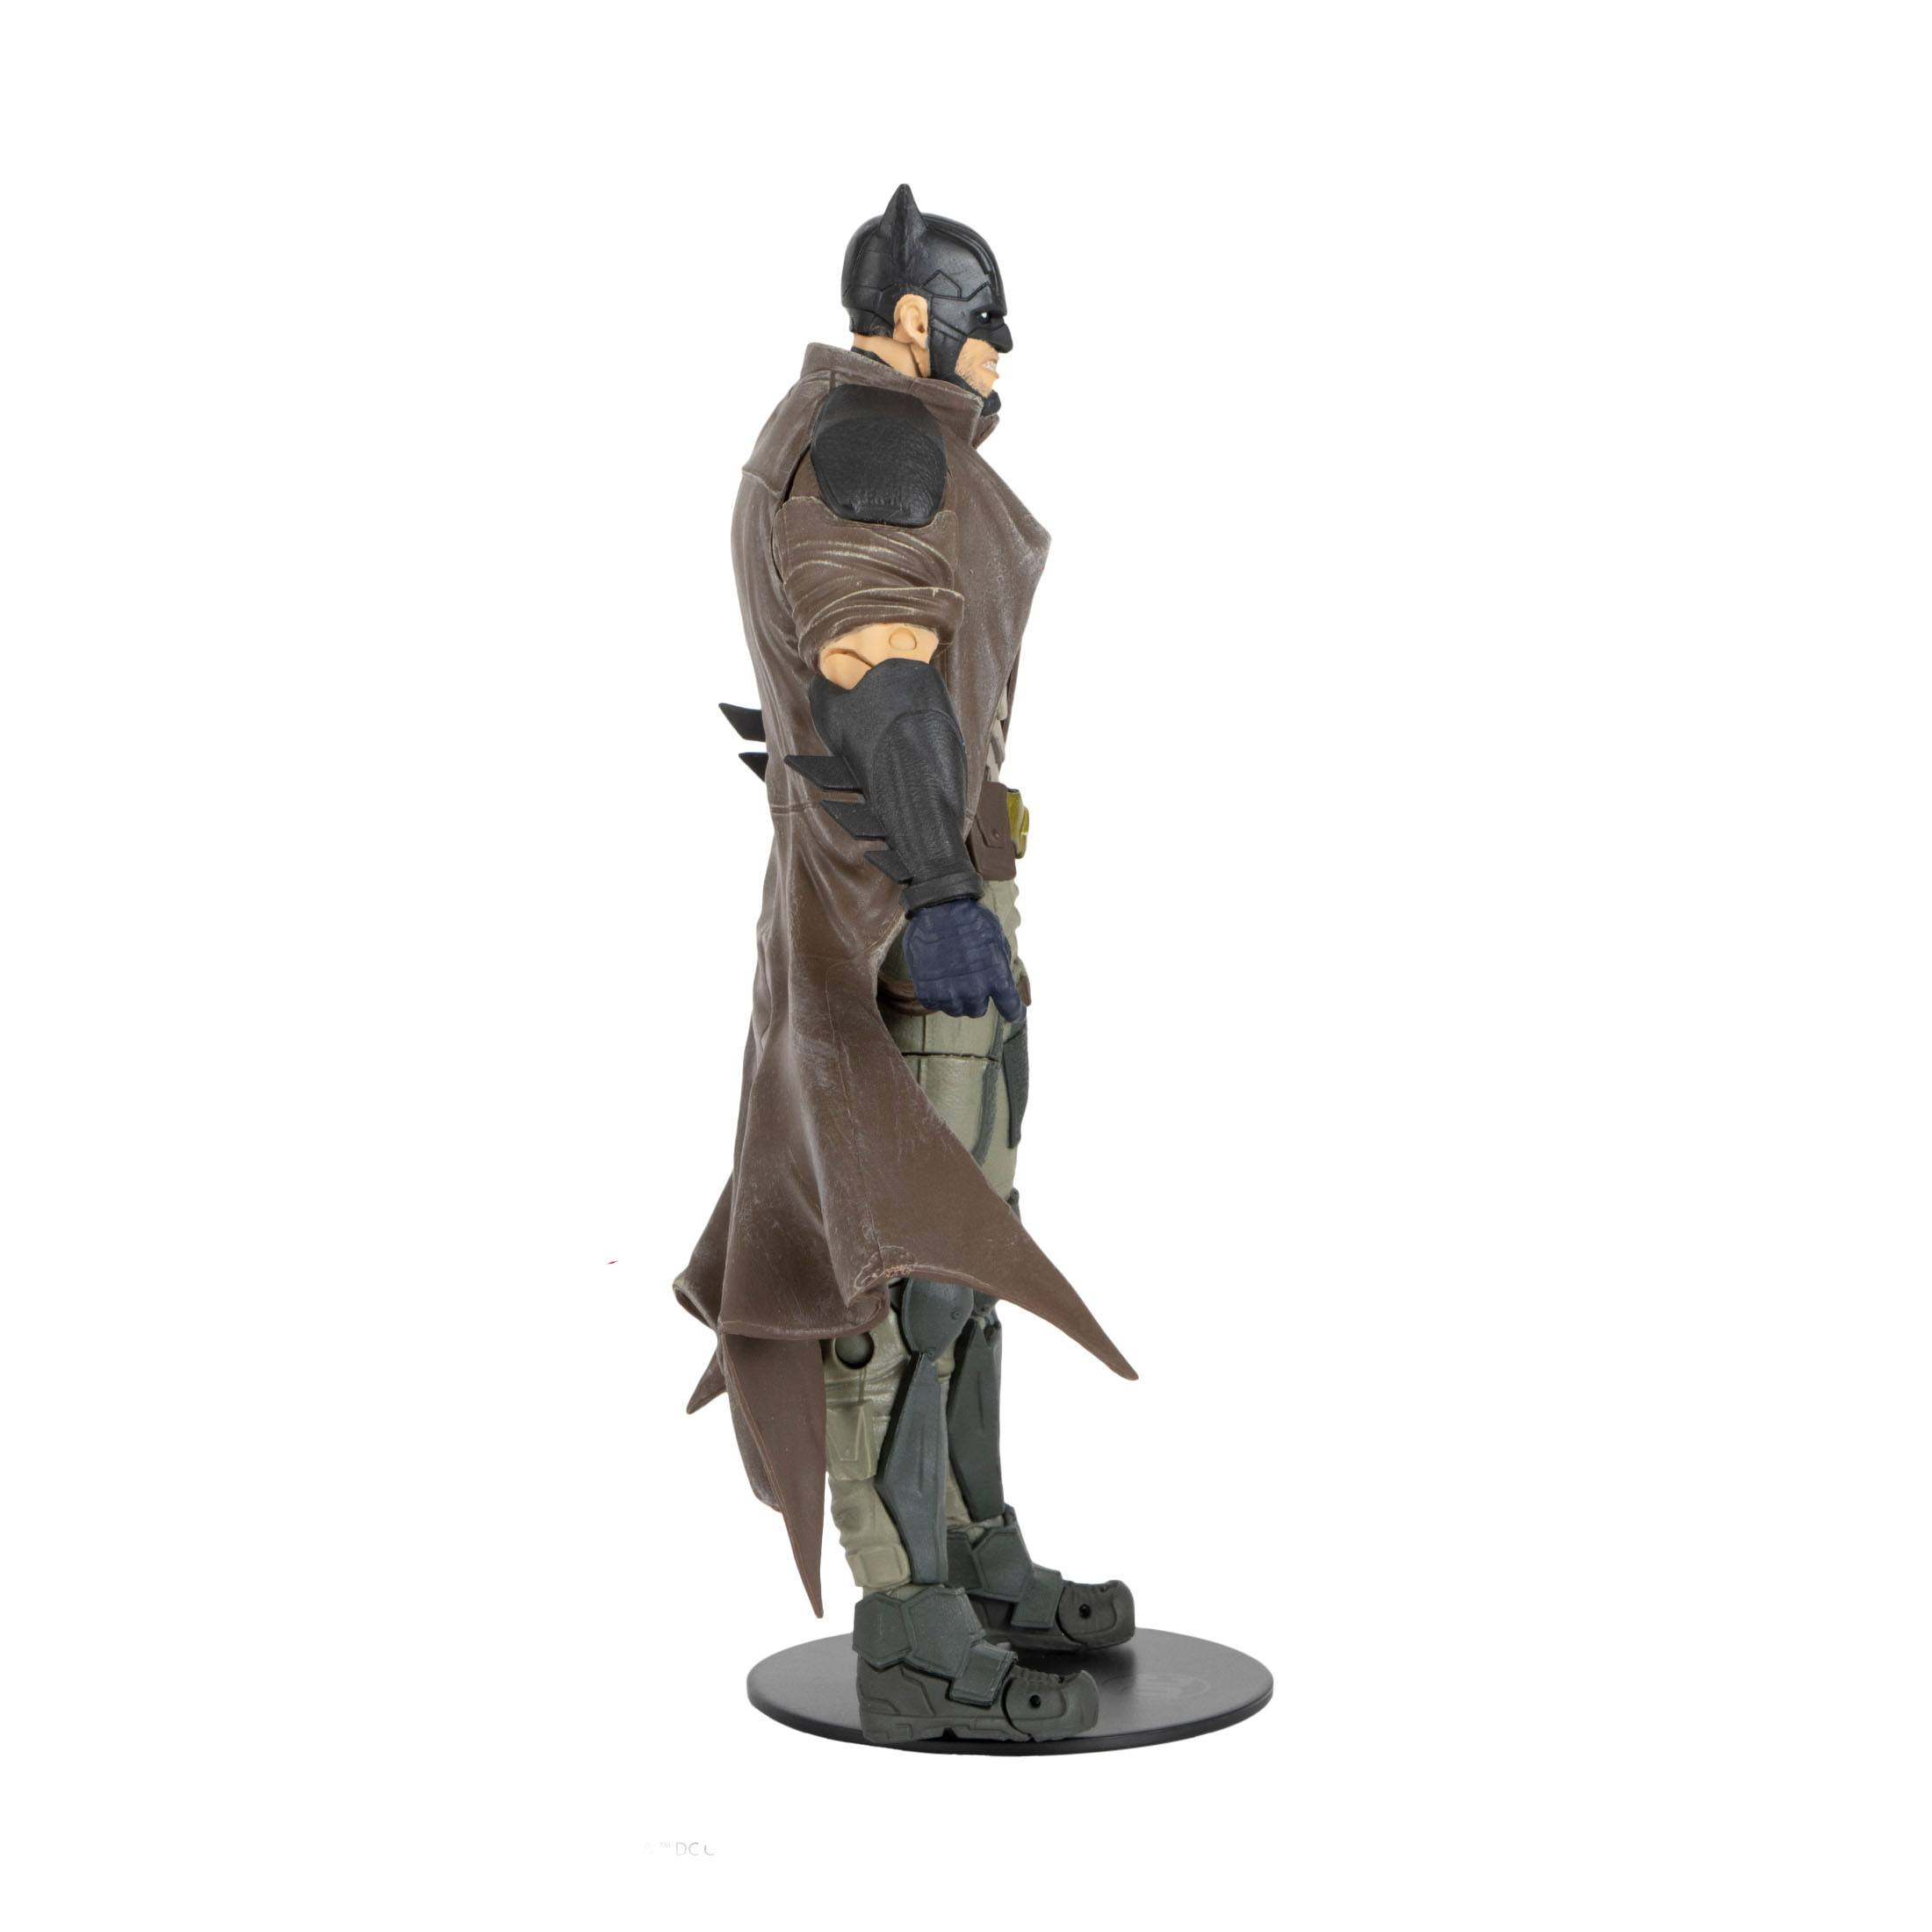 MCFARLANE TOYS DC Multiverse Action cm Detective Dark Batman 18 Actionfigur Figur